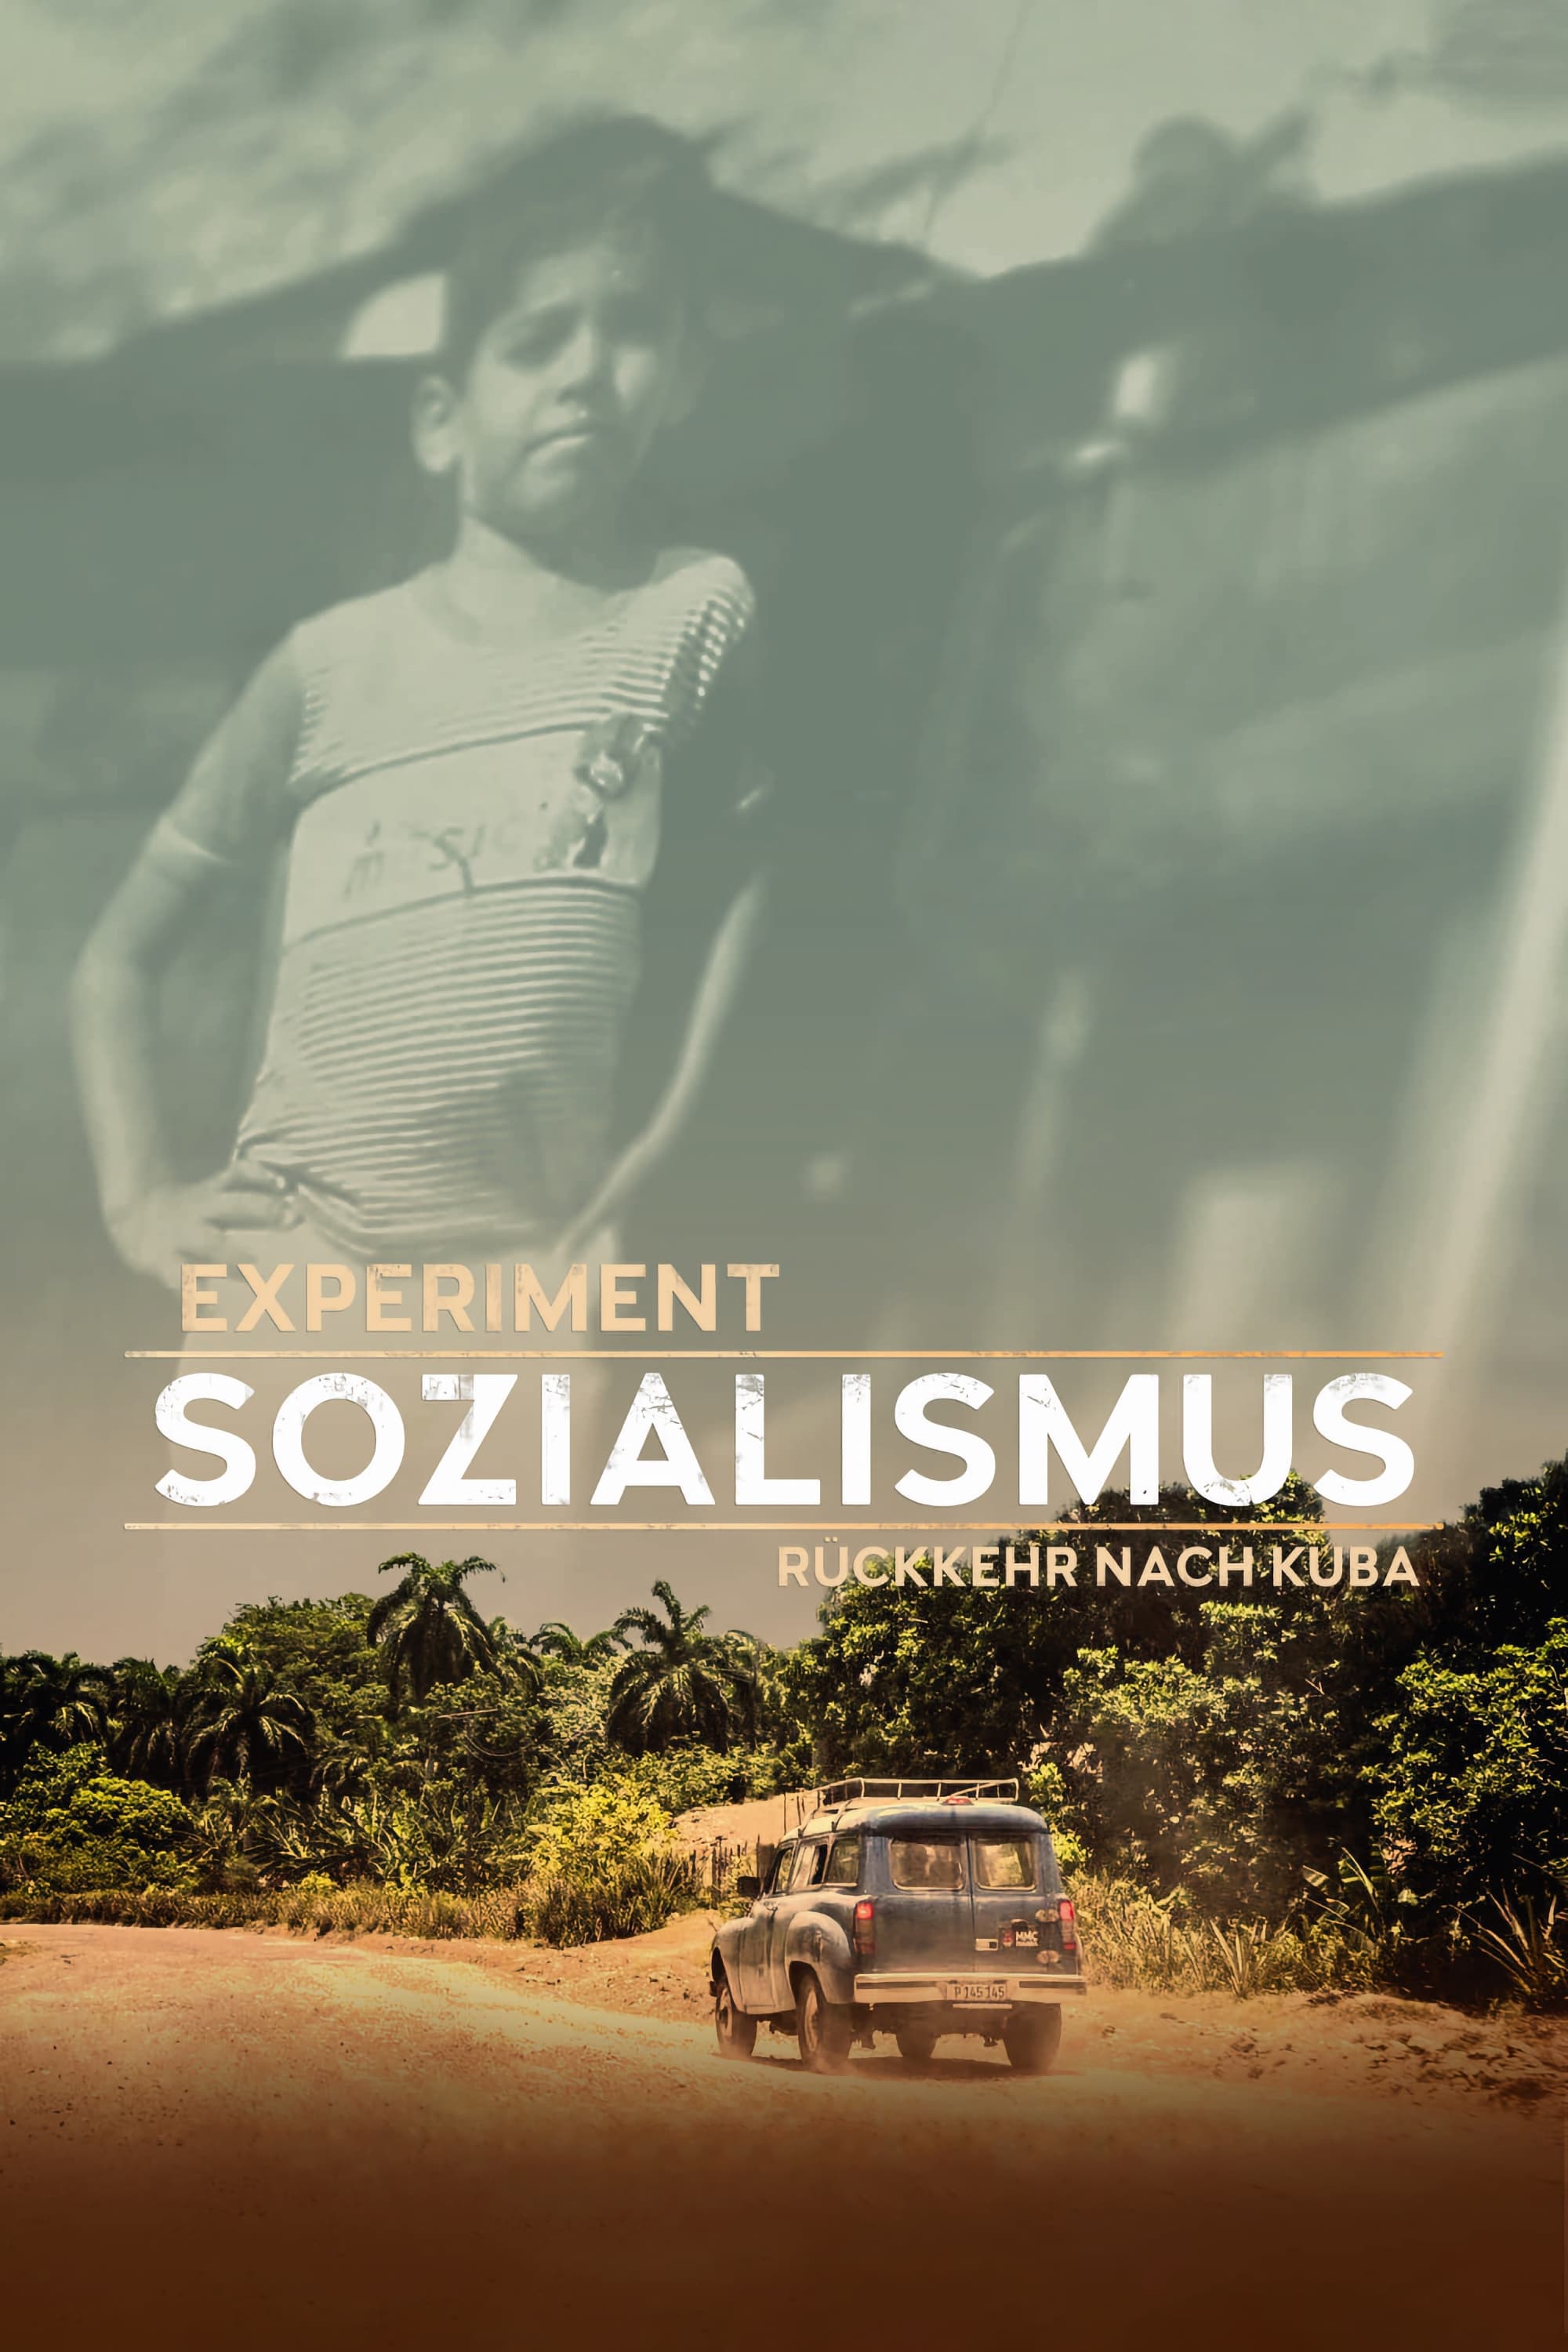 Experiment Socialism